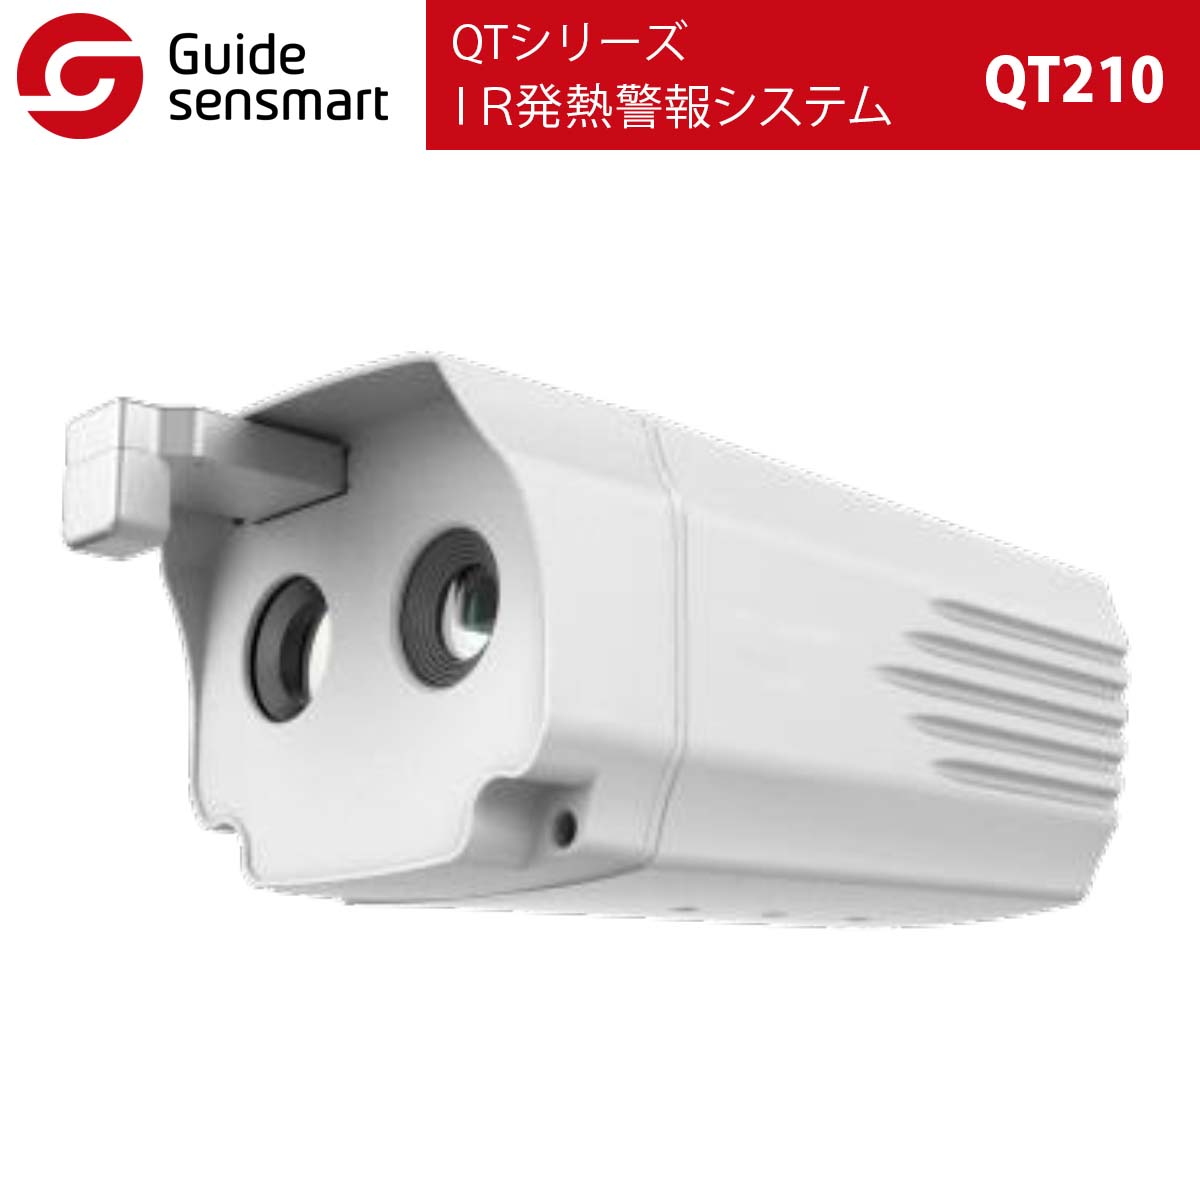 Guide sensmart IR発熱警報システム QT210（QTシリーズ） サーマルカメラ タイムテクノロジー公式ショップ